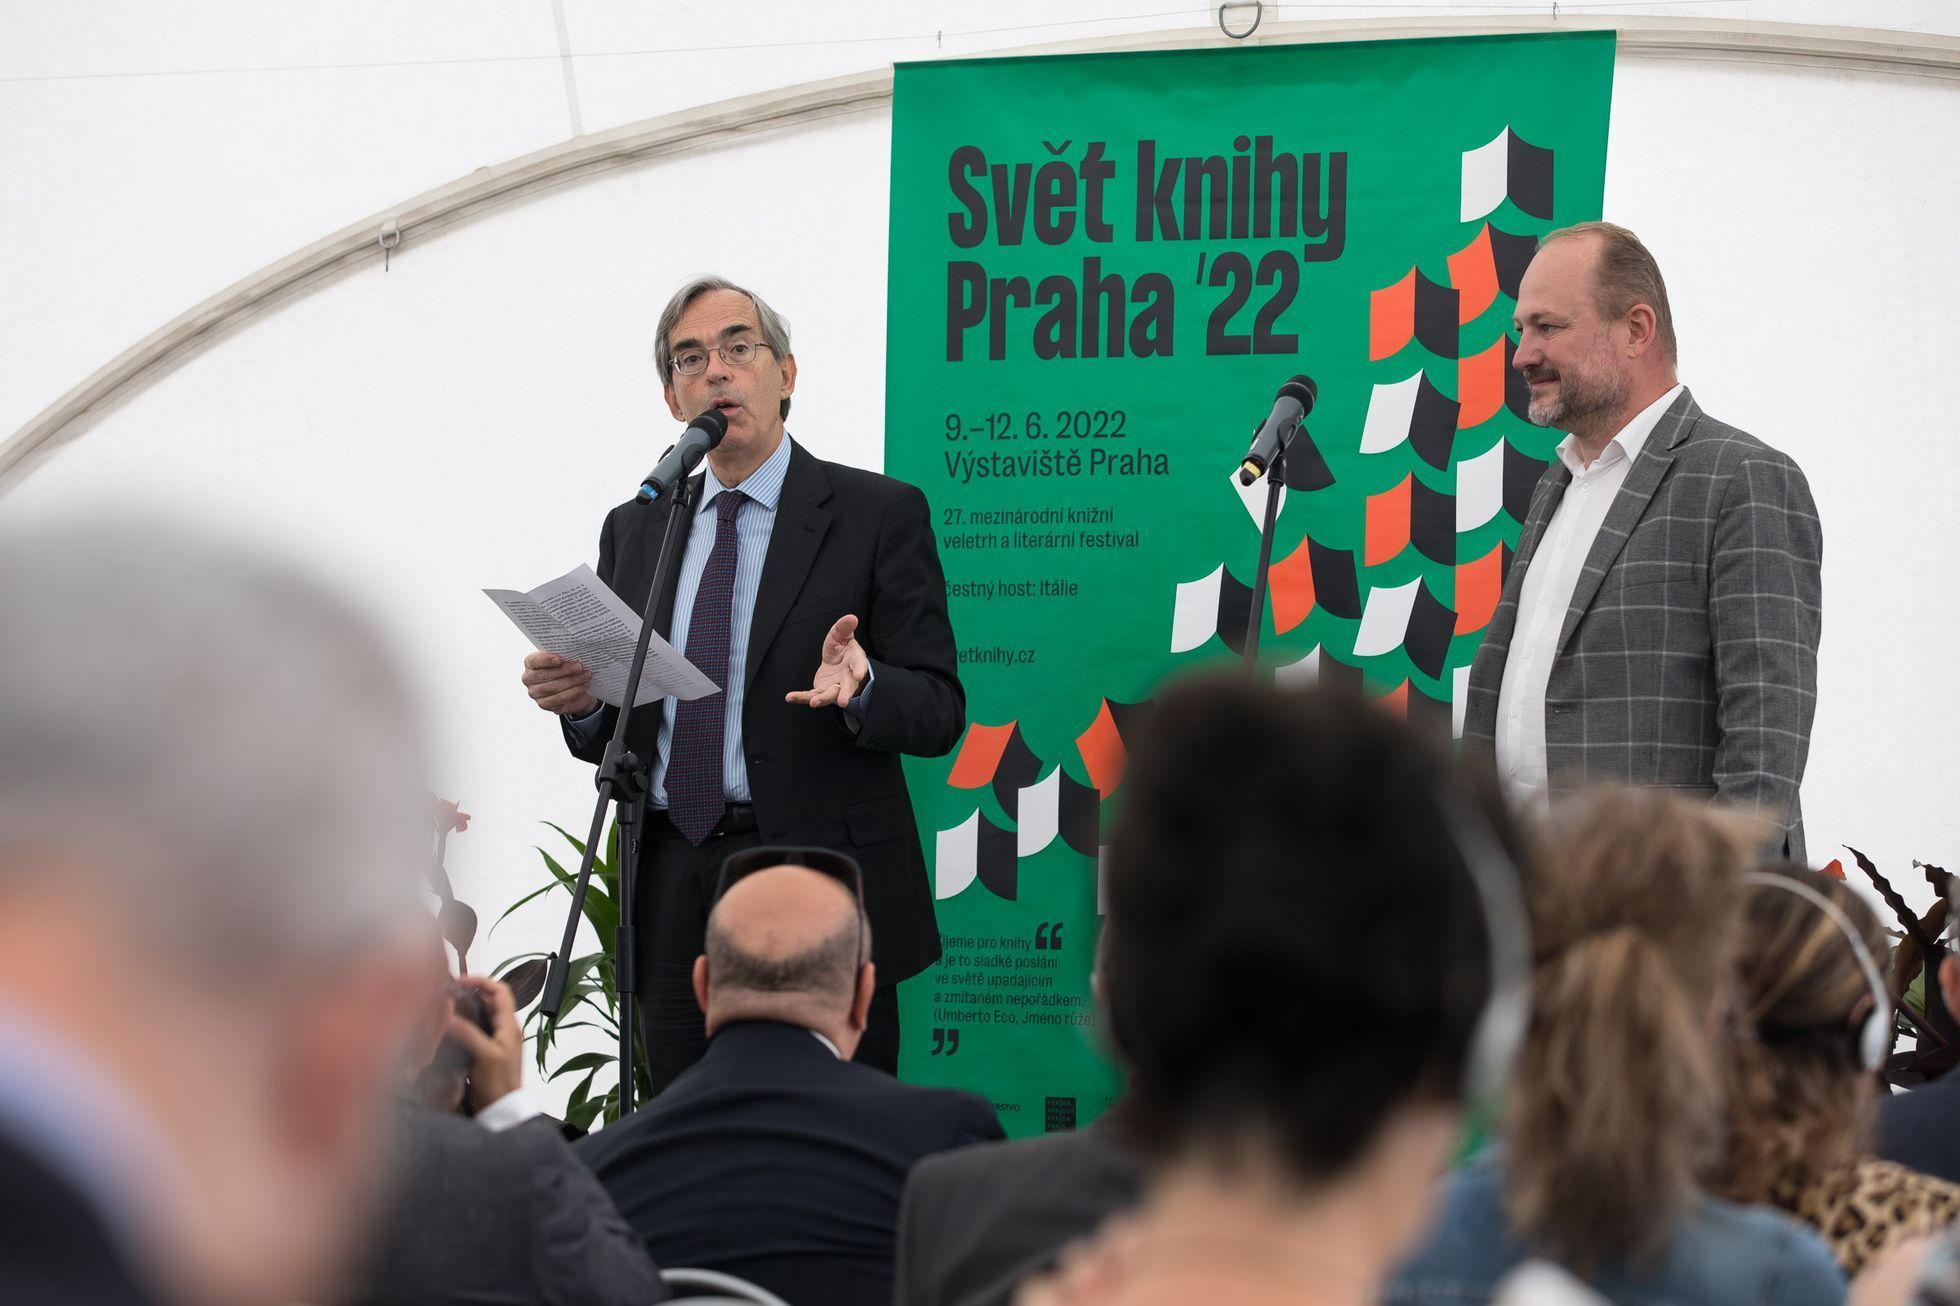 Svět knihy, Praha, 2022